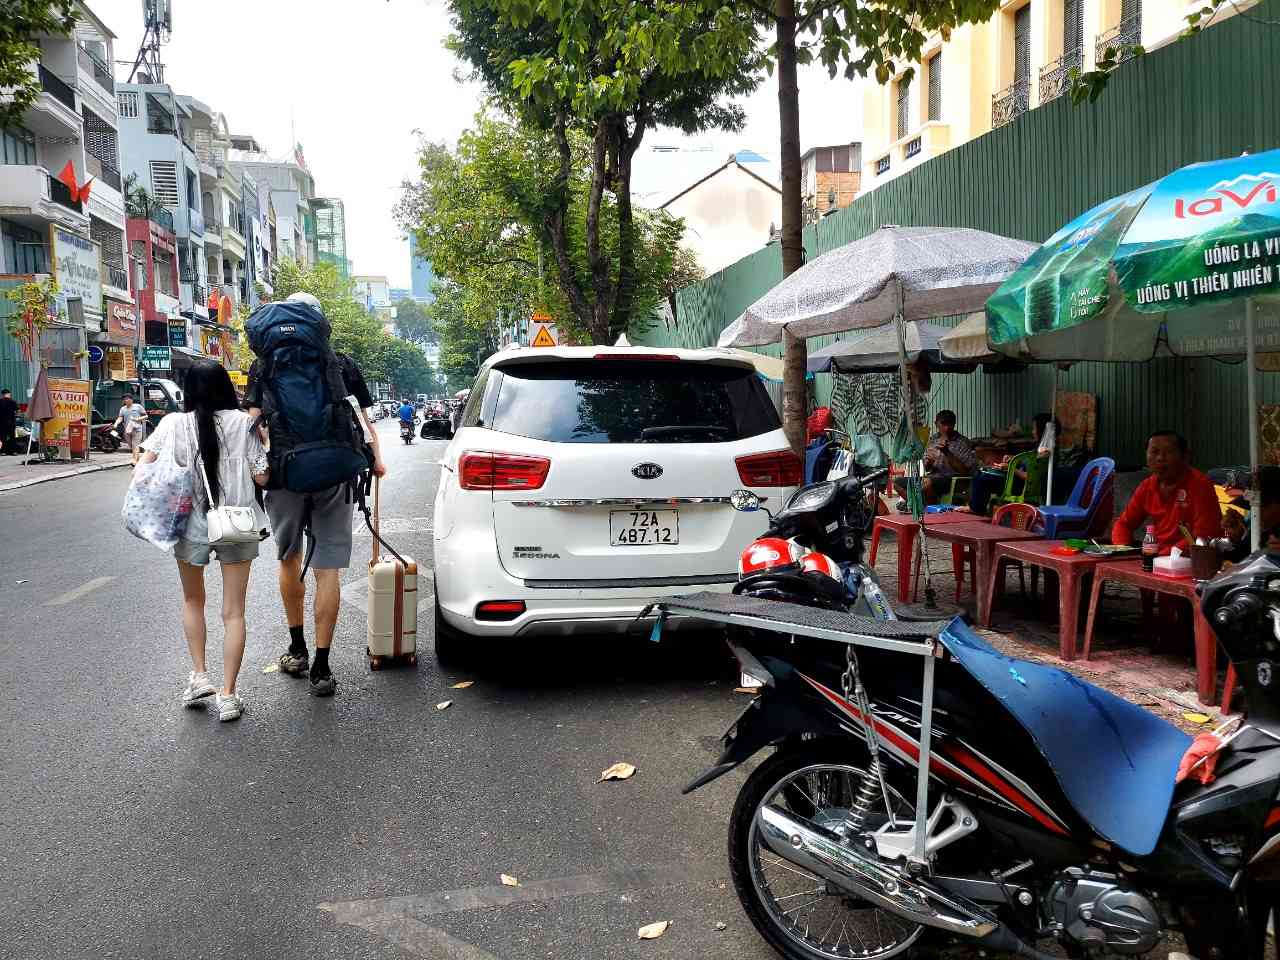 Vỉa hè bị chiếm dụng để bày bán ghế buôn bán trên đường Nguyễn Thái Bình (Quận 1), du khách nước ngoài phải đi bộ ra giữa lòng đường.